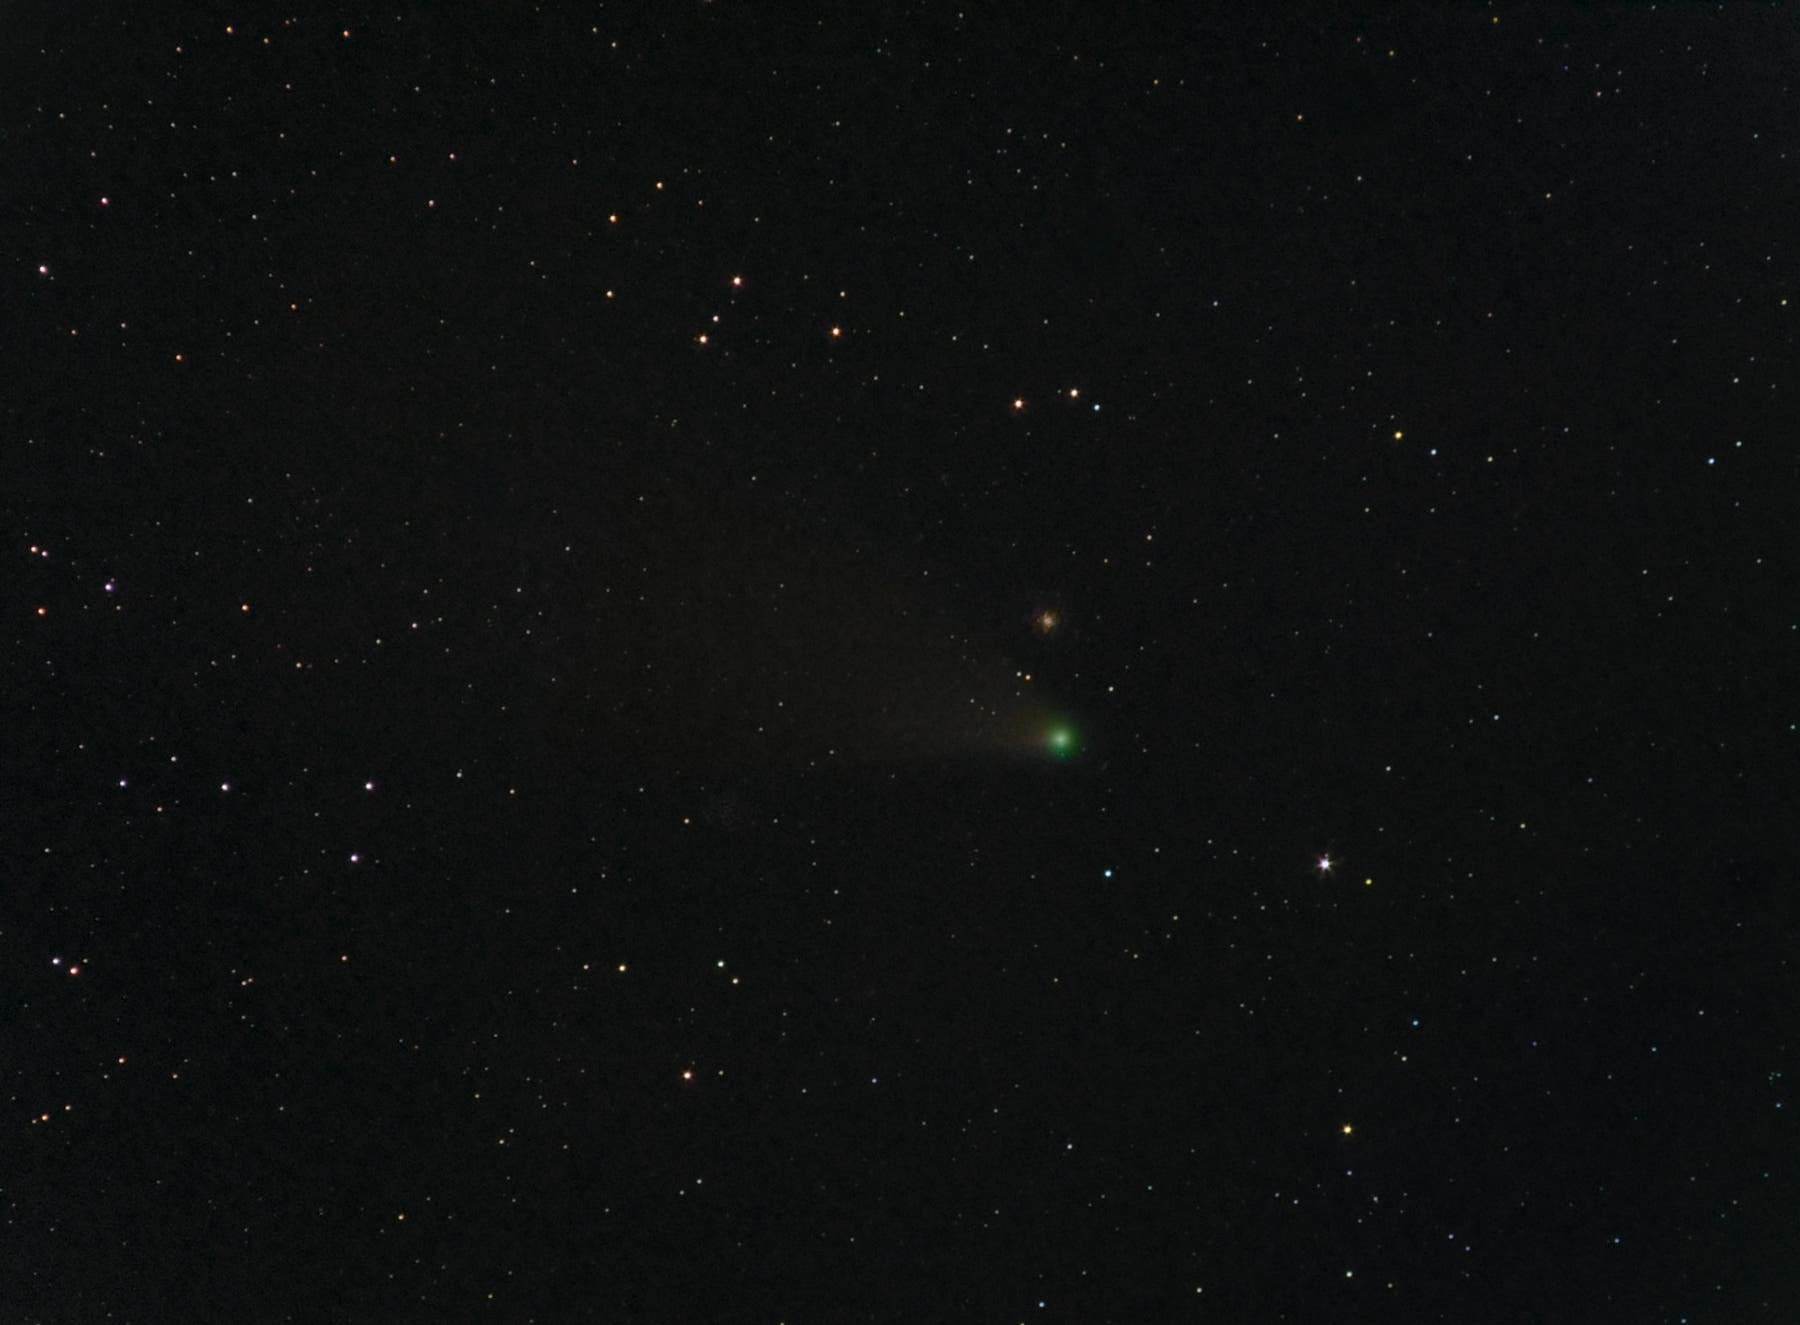 Komet C/2020 F3 bei Messier 53 und NGC 5053